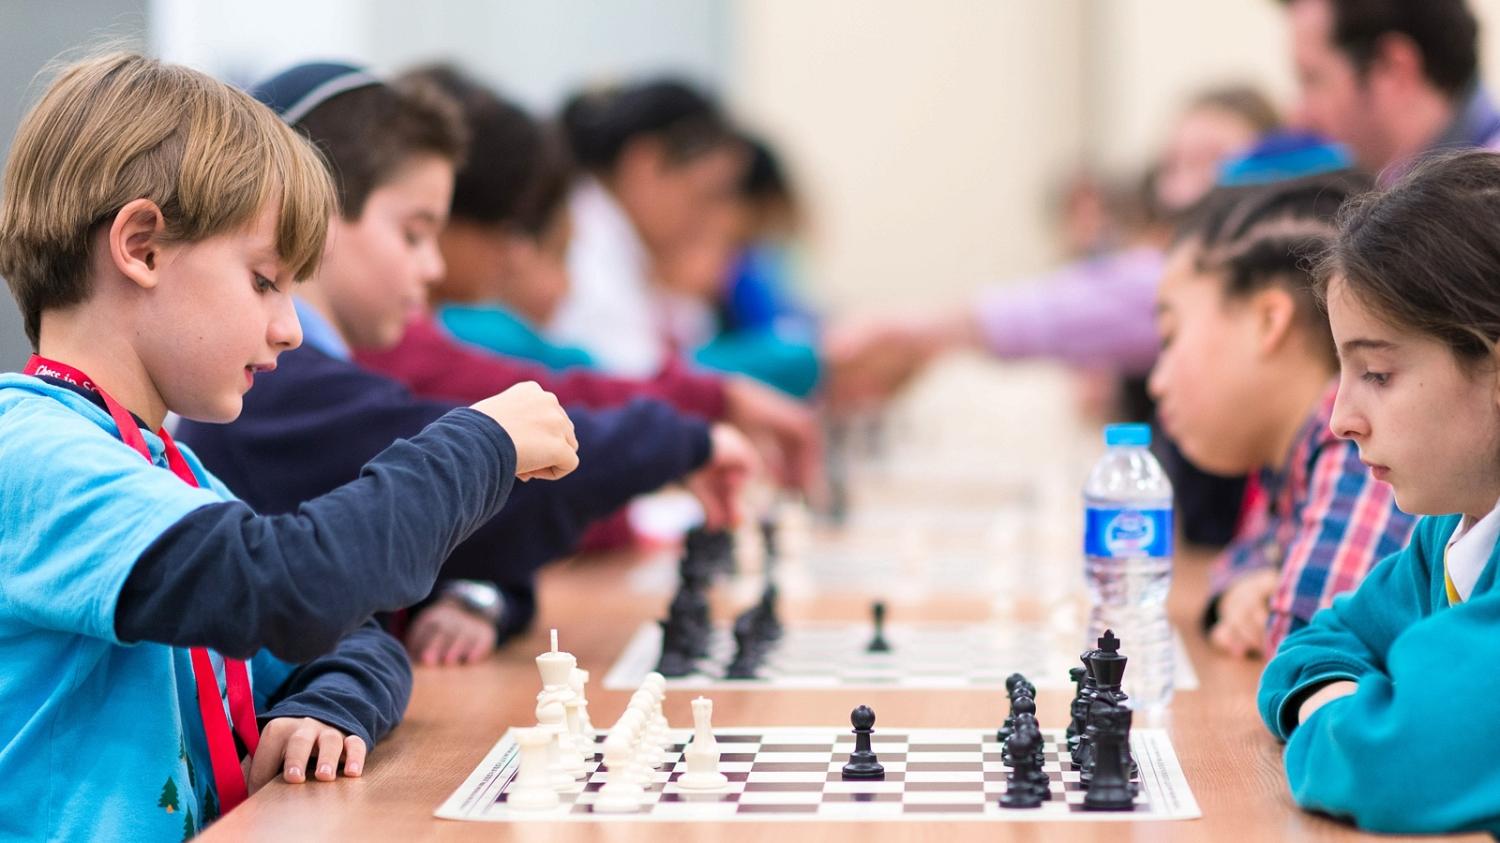 children playing chess tournament